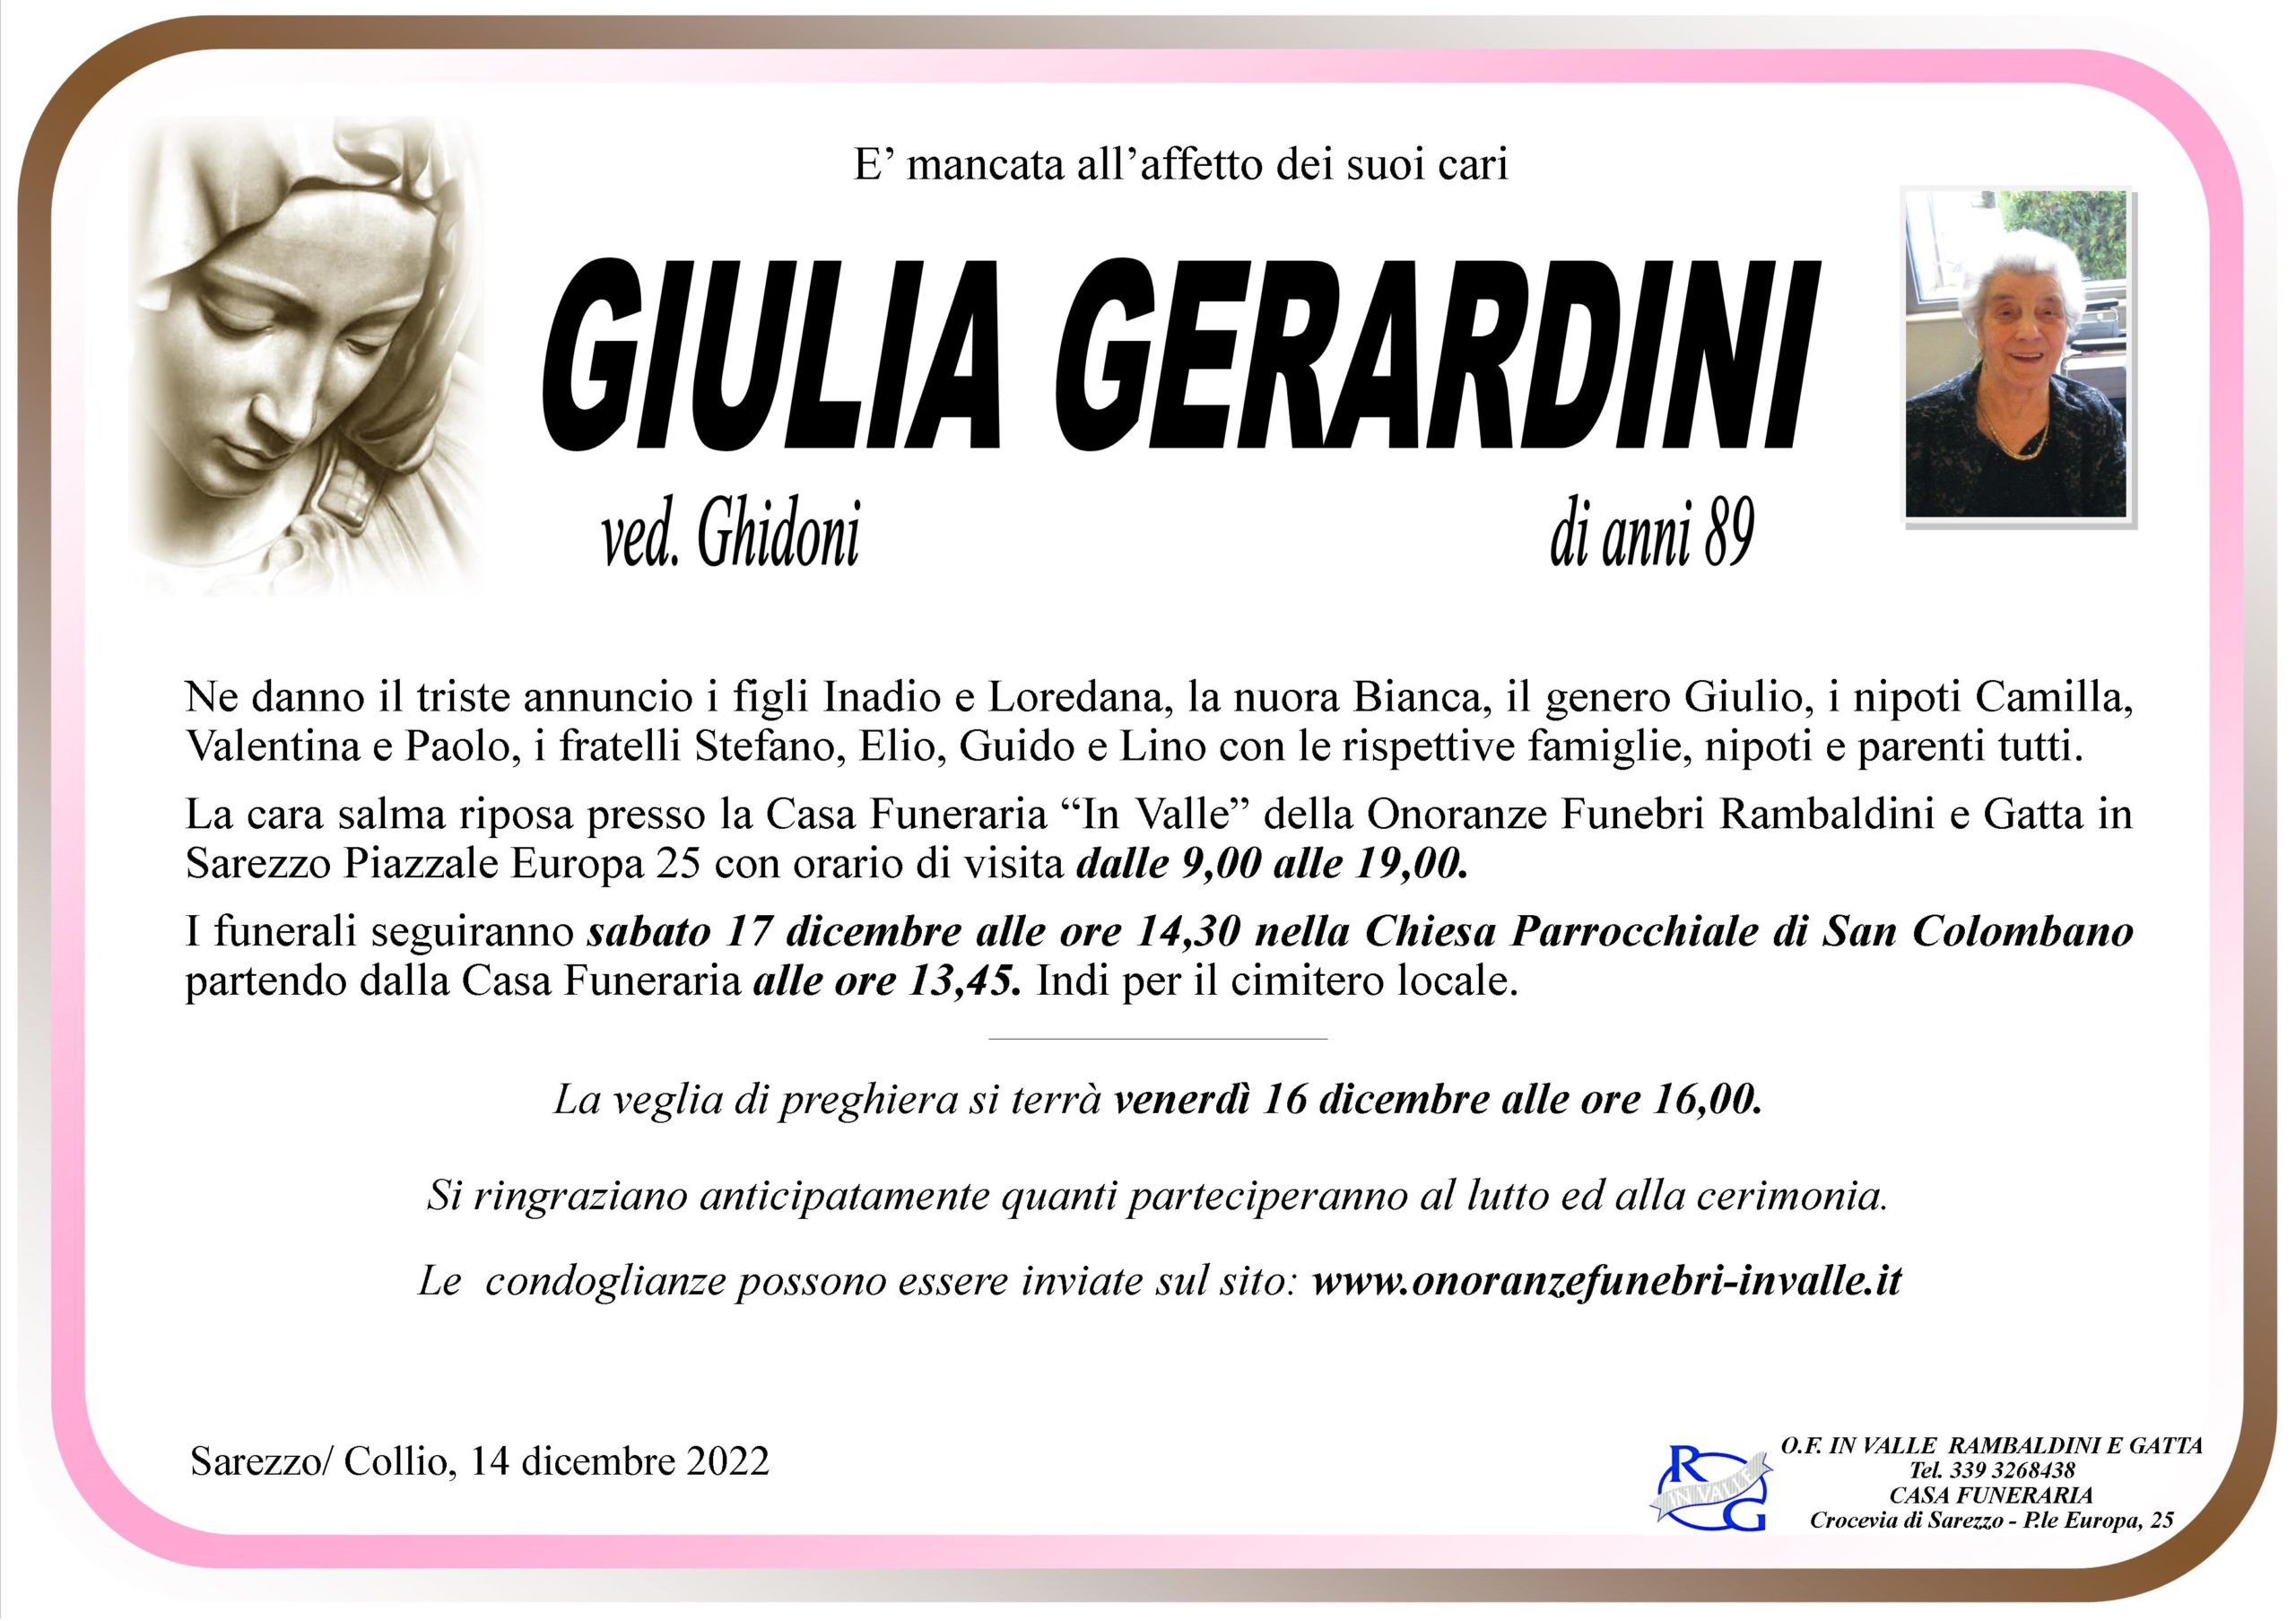 Al momento stai visualizzando Gerardini Giulia